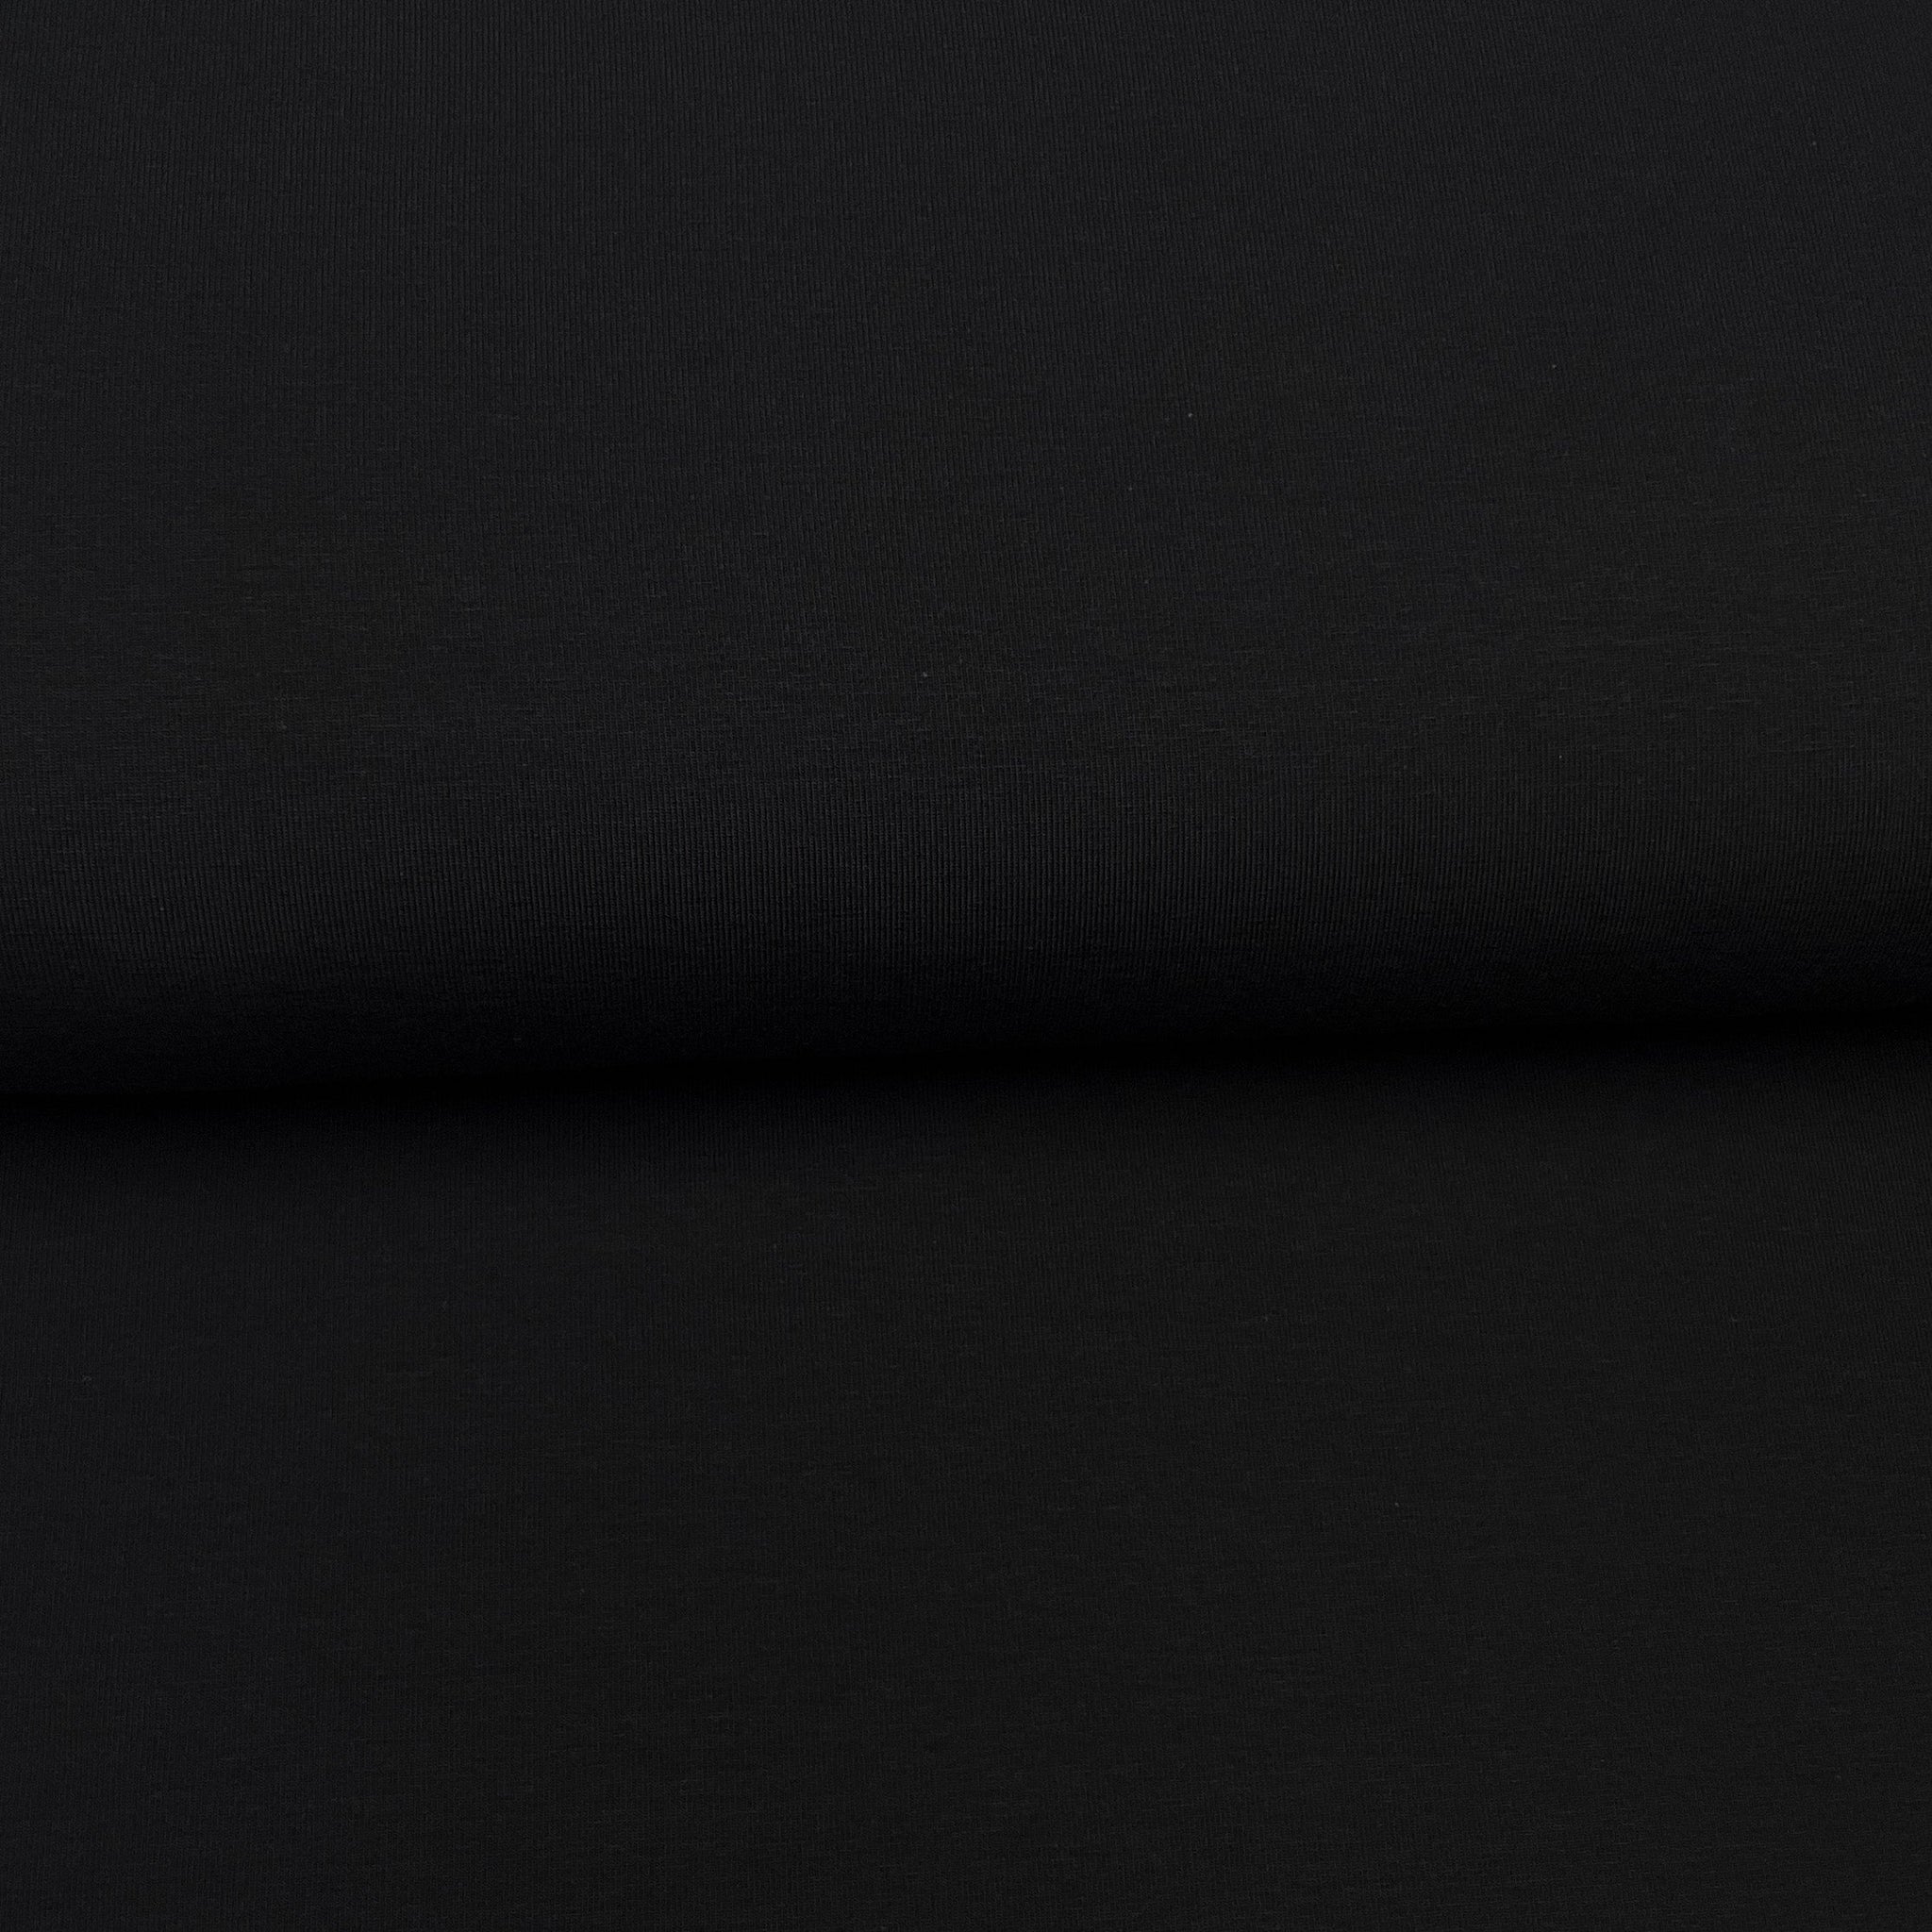 Fin de rouleau 35 cm - Noir - Jersey uni